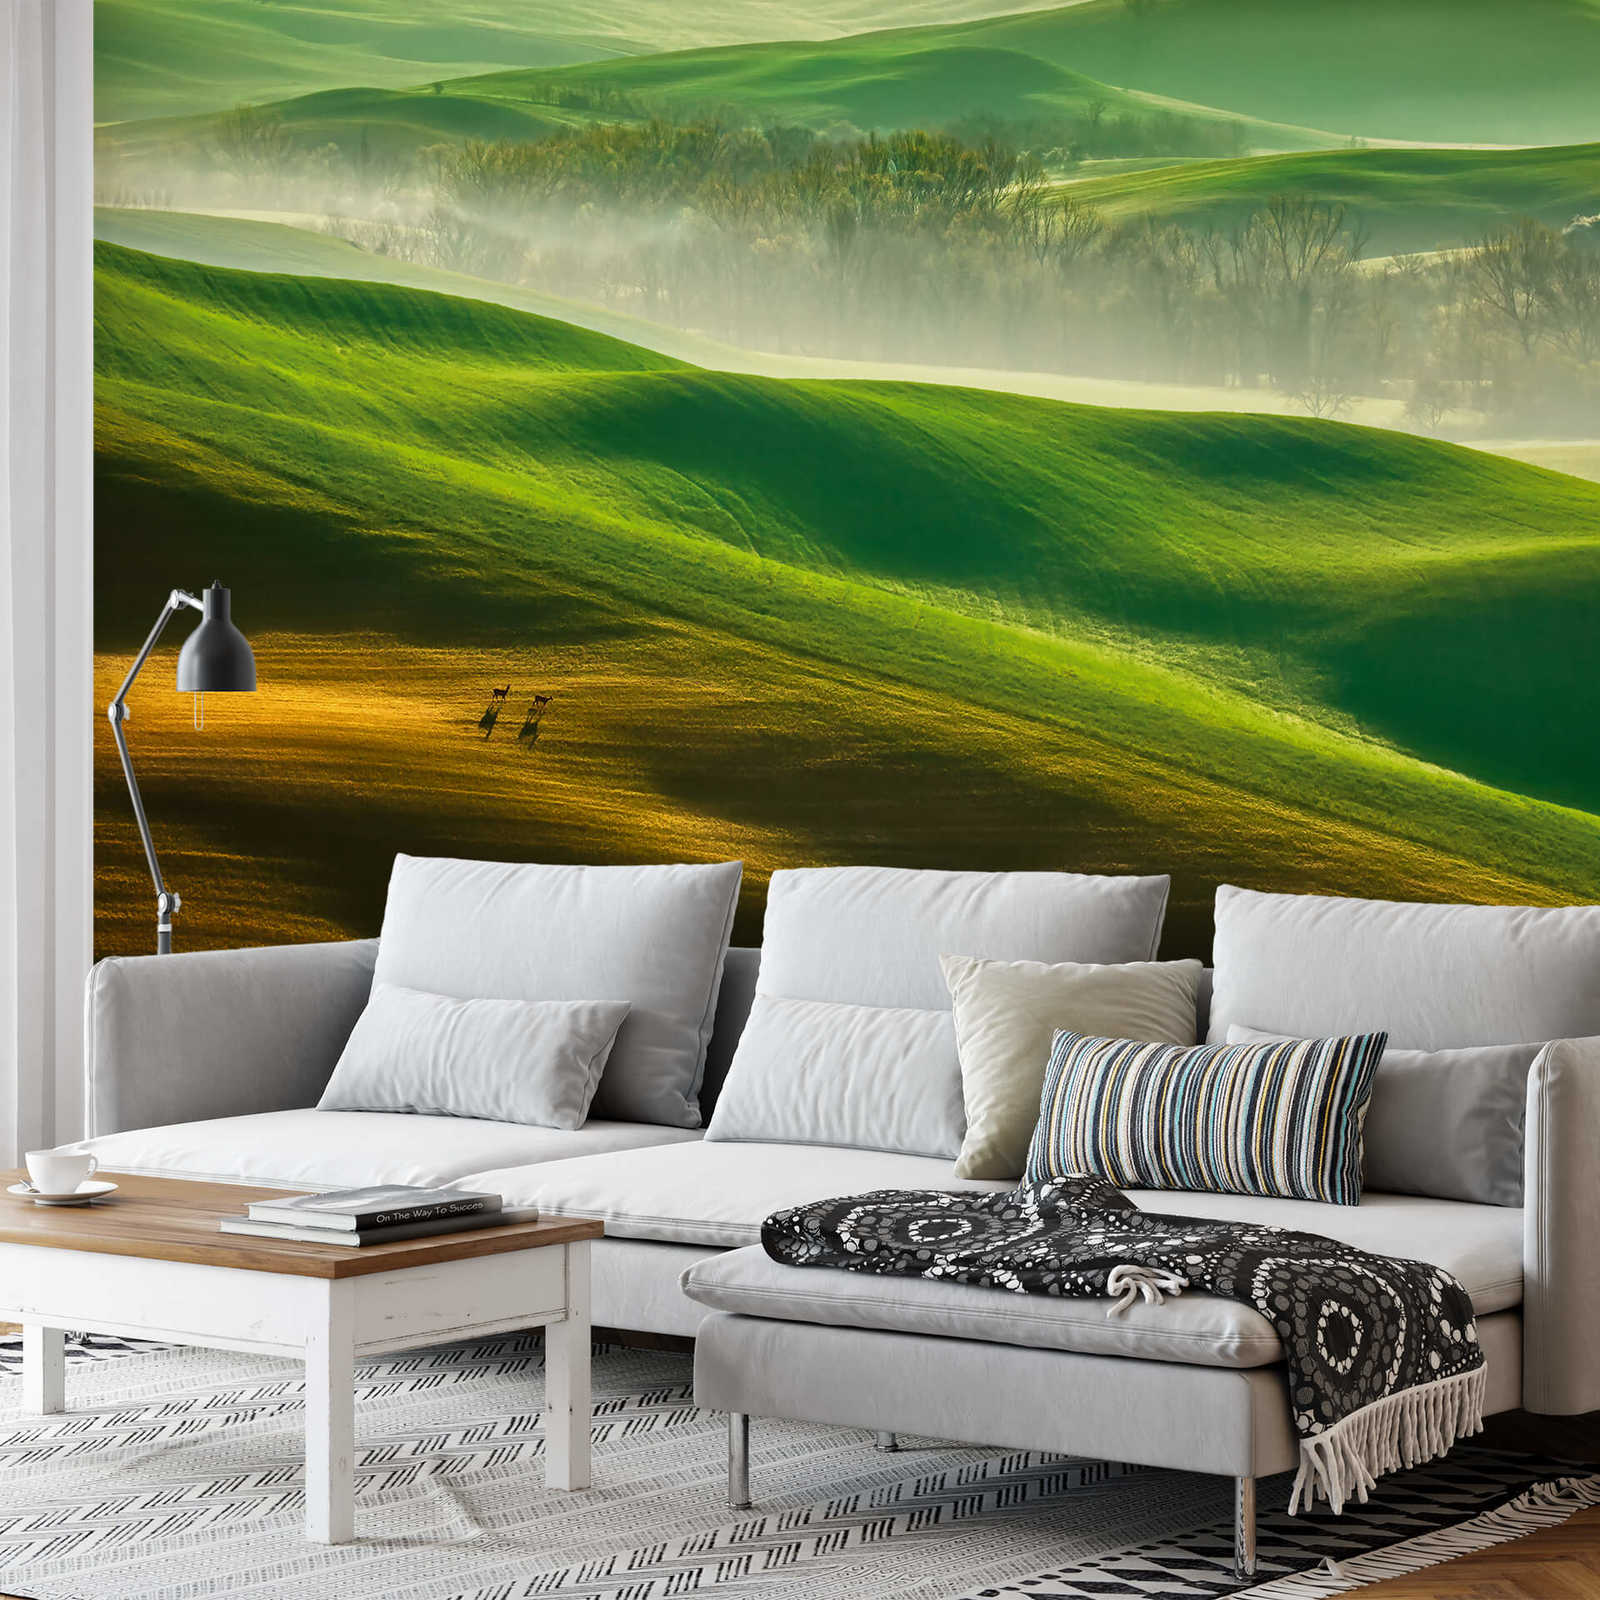             Muurschildering Natuur Berglandschap - Groen, Geel, Wit
        